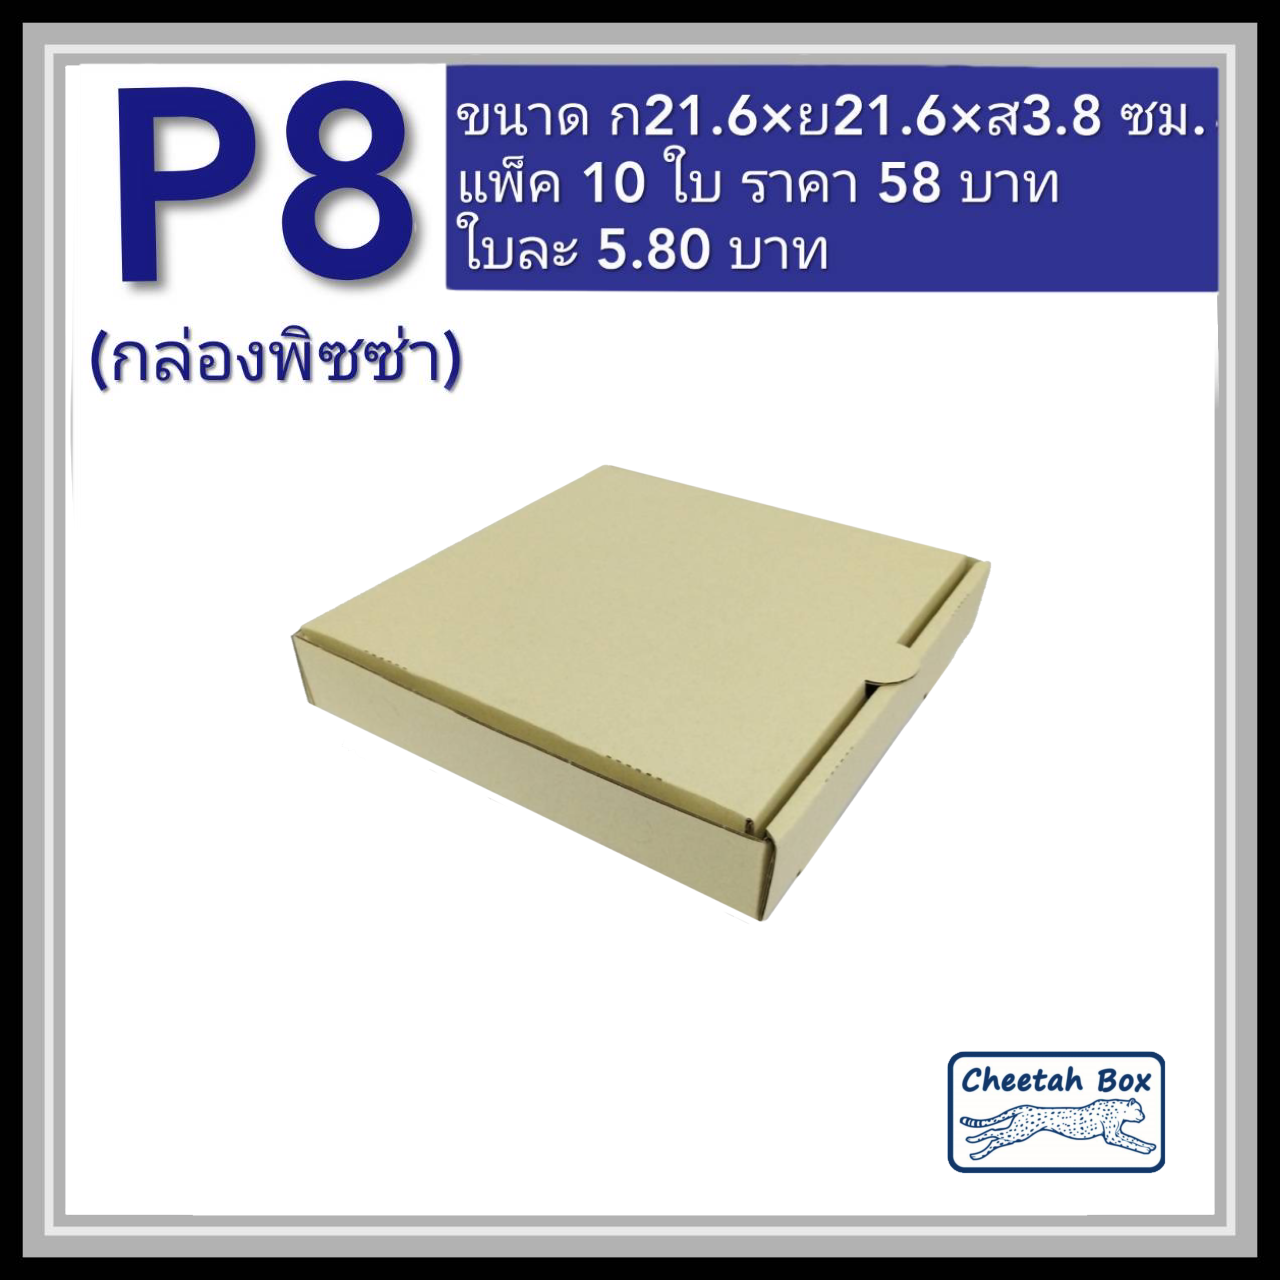 กล่องพิซซ่า 8 นิ้ว รหัส P8 ไม่พิมพ์ (Pizza Box) ขนาด 21.6W x 21.6L x 3.8H cm.